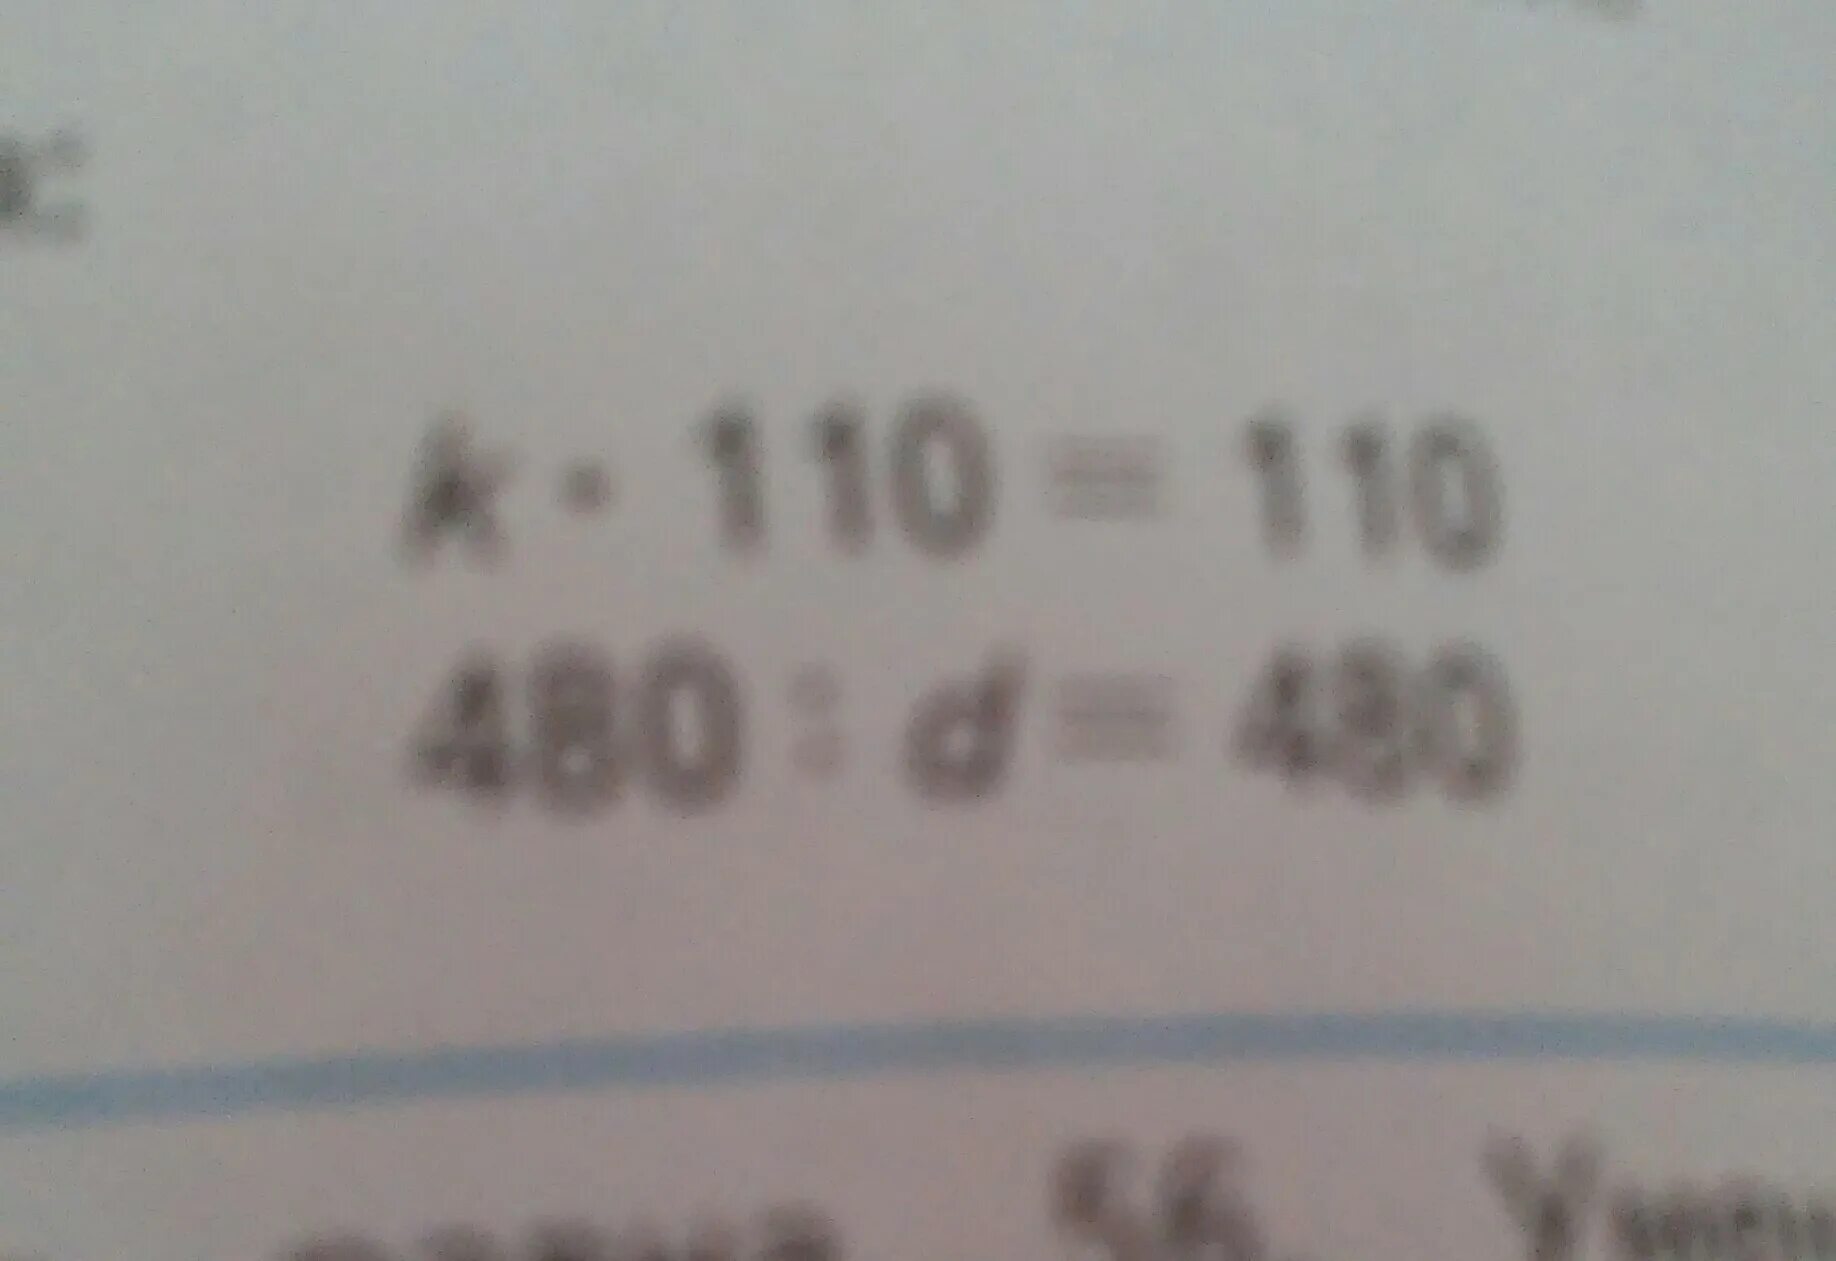 7140 плюс 110260 умножить. Икс умножить на 110 равно 110. Реши уравнение Икс умножить на 110 равно 110. 110 Умножить на 110 в столбик. 480 Умнож на 3200 столбиком.